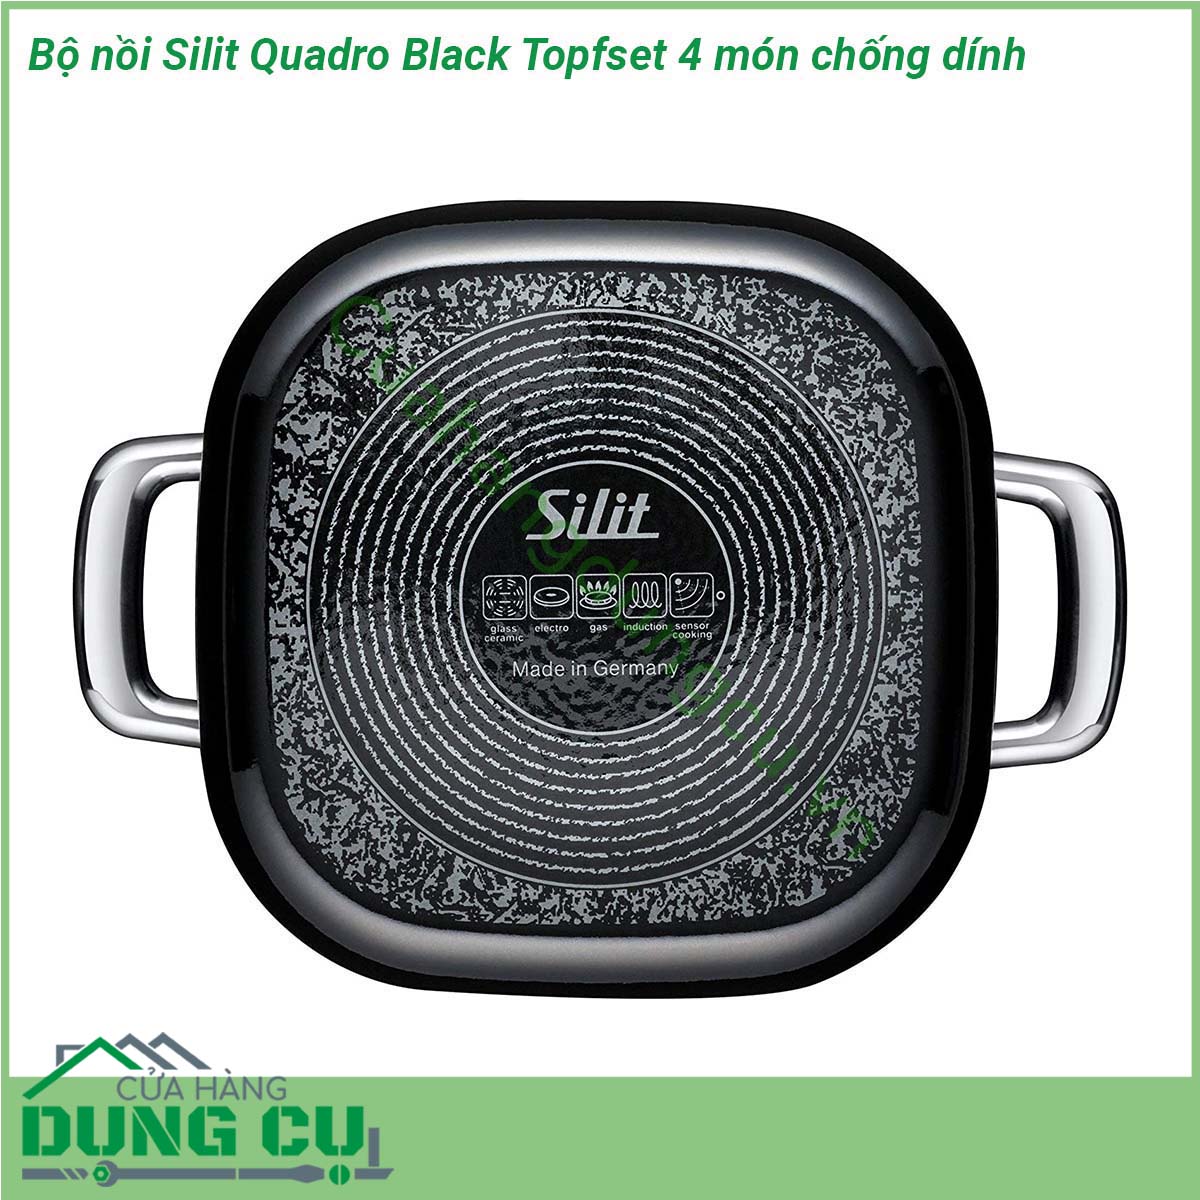 Bộ nồi Silit Quadro Black Topfset 4 món chống dính được thiết kế với tông màu chủ đạo là màu đen  mang vẻ sang trọng hiện đại Bộ nồi bao gồm 2 nồi thịt 1 nồi chuyên dùng để rán và 1 nồi quánh cánh dài dễ dàng phù hợp với mọi món ăn bạn cần chế biến